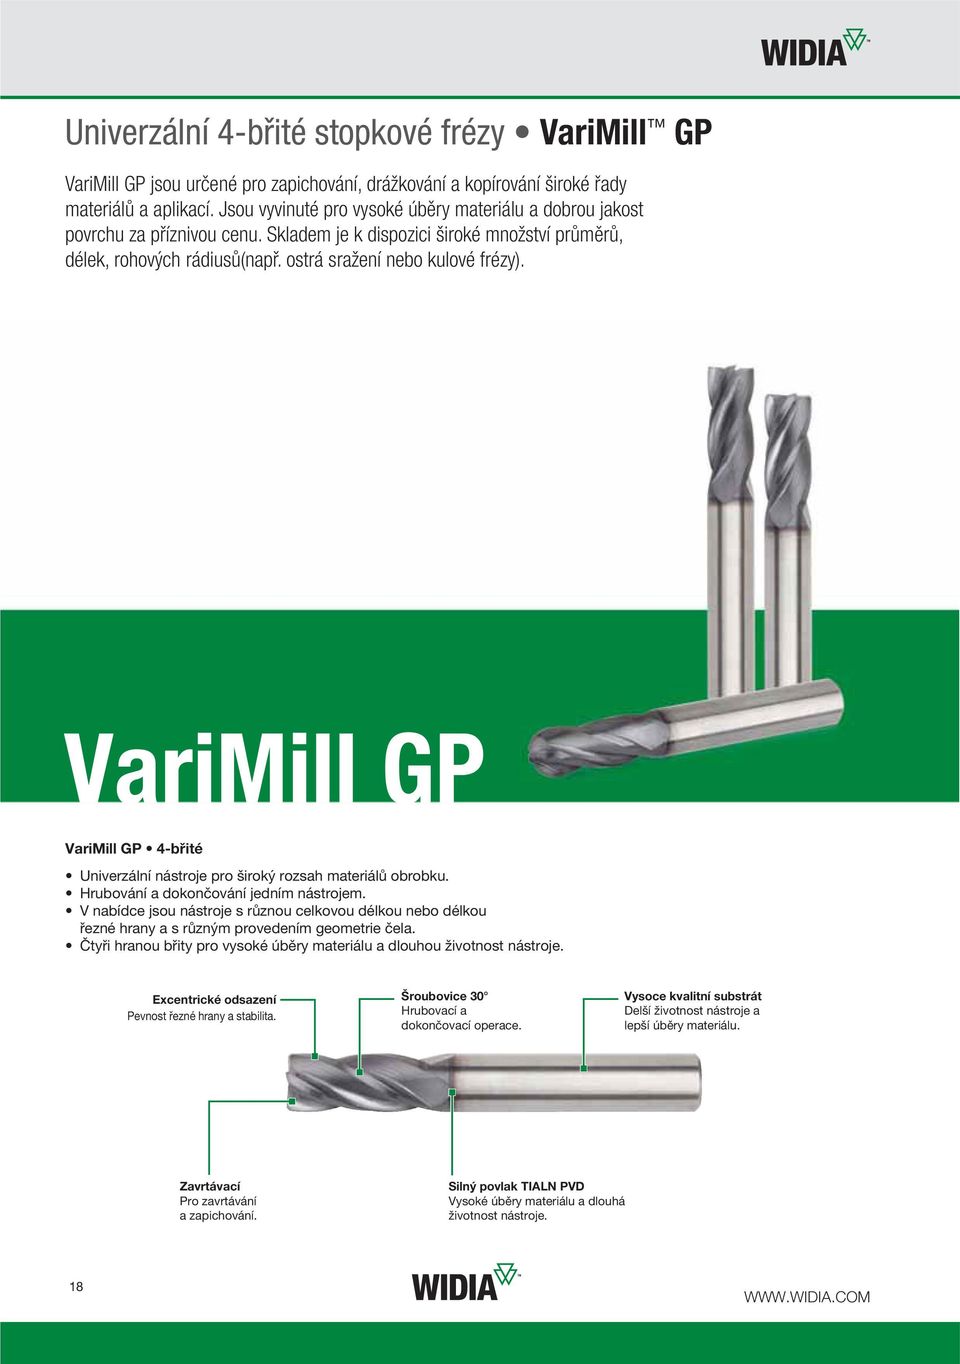 VariMill GP VariMill GP 4-břité Univerzální nástroje pro široký rozsah materiálů obrobku. Hrubování a dokončování jedním nástrojem.